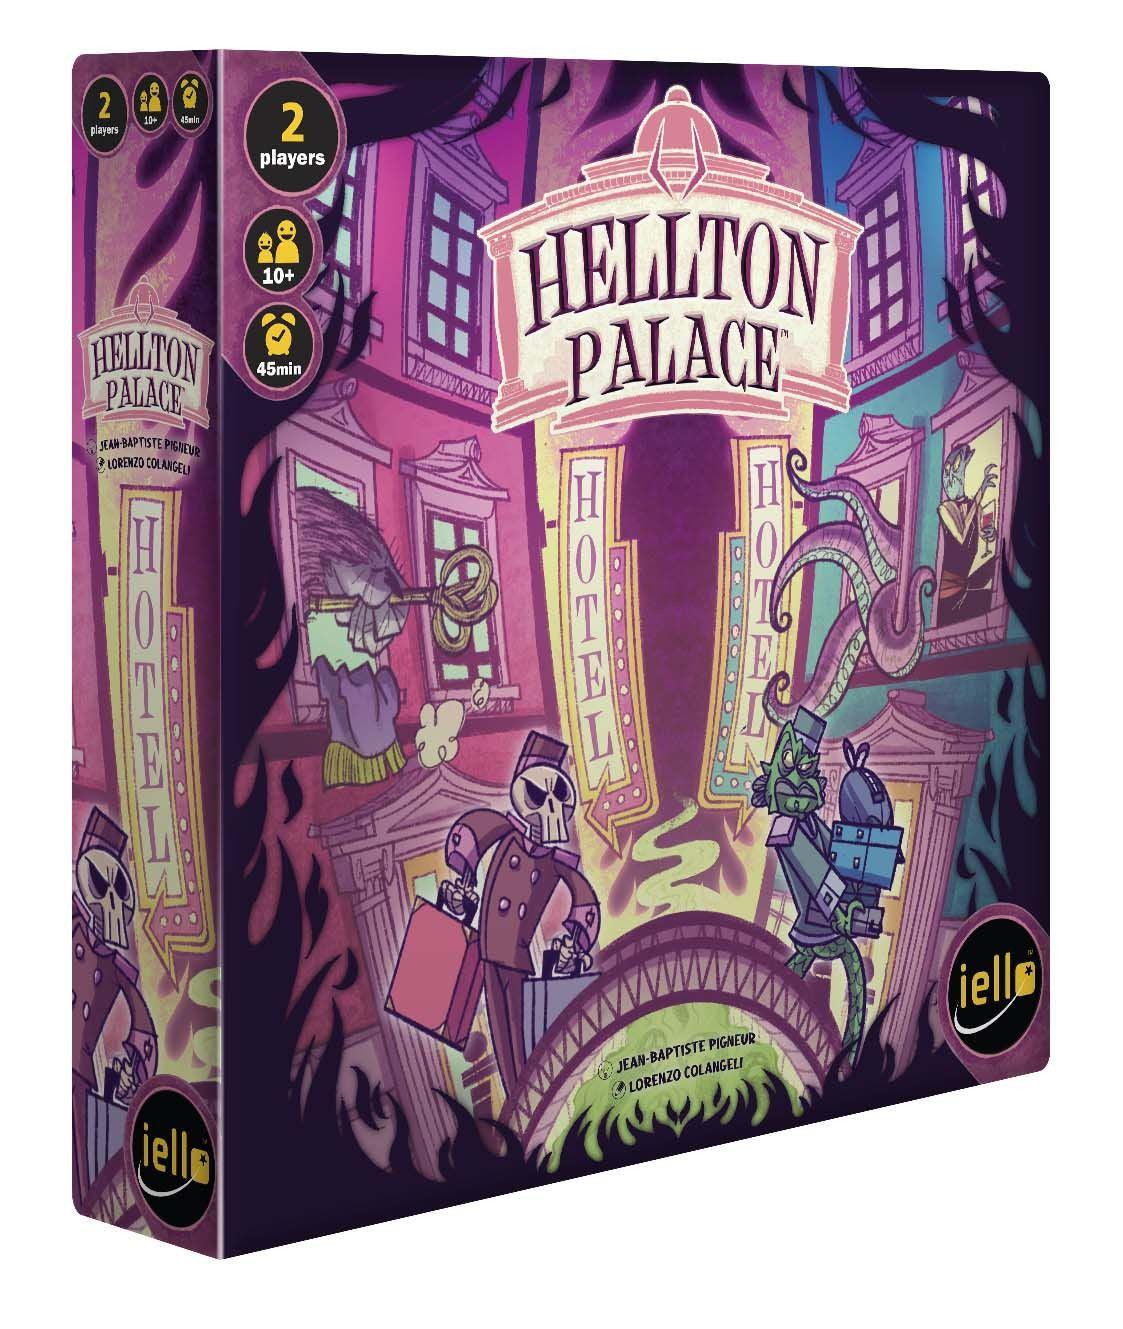 VR-104834 Hellton Palace - Iello - Titan Pop Culture